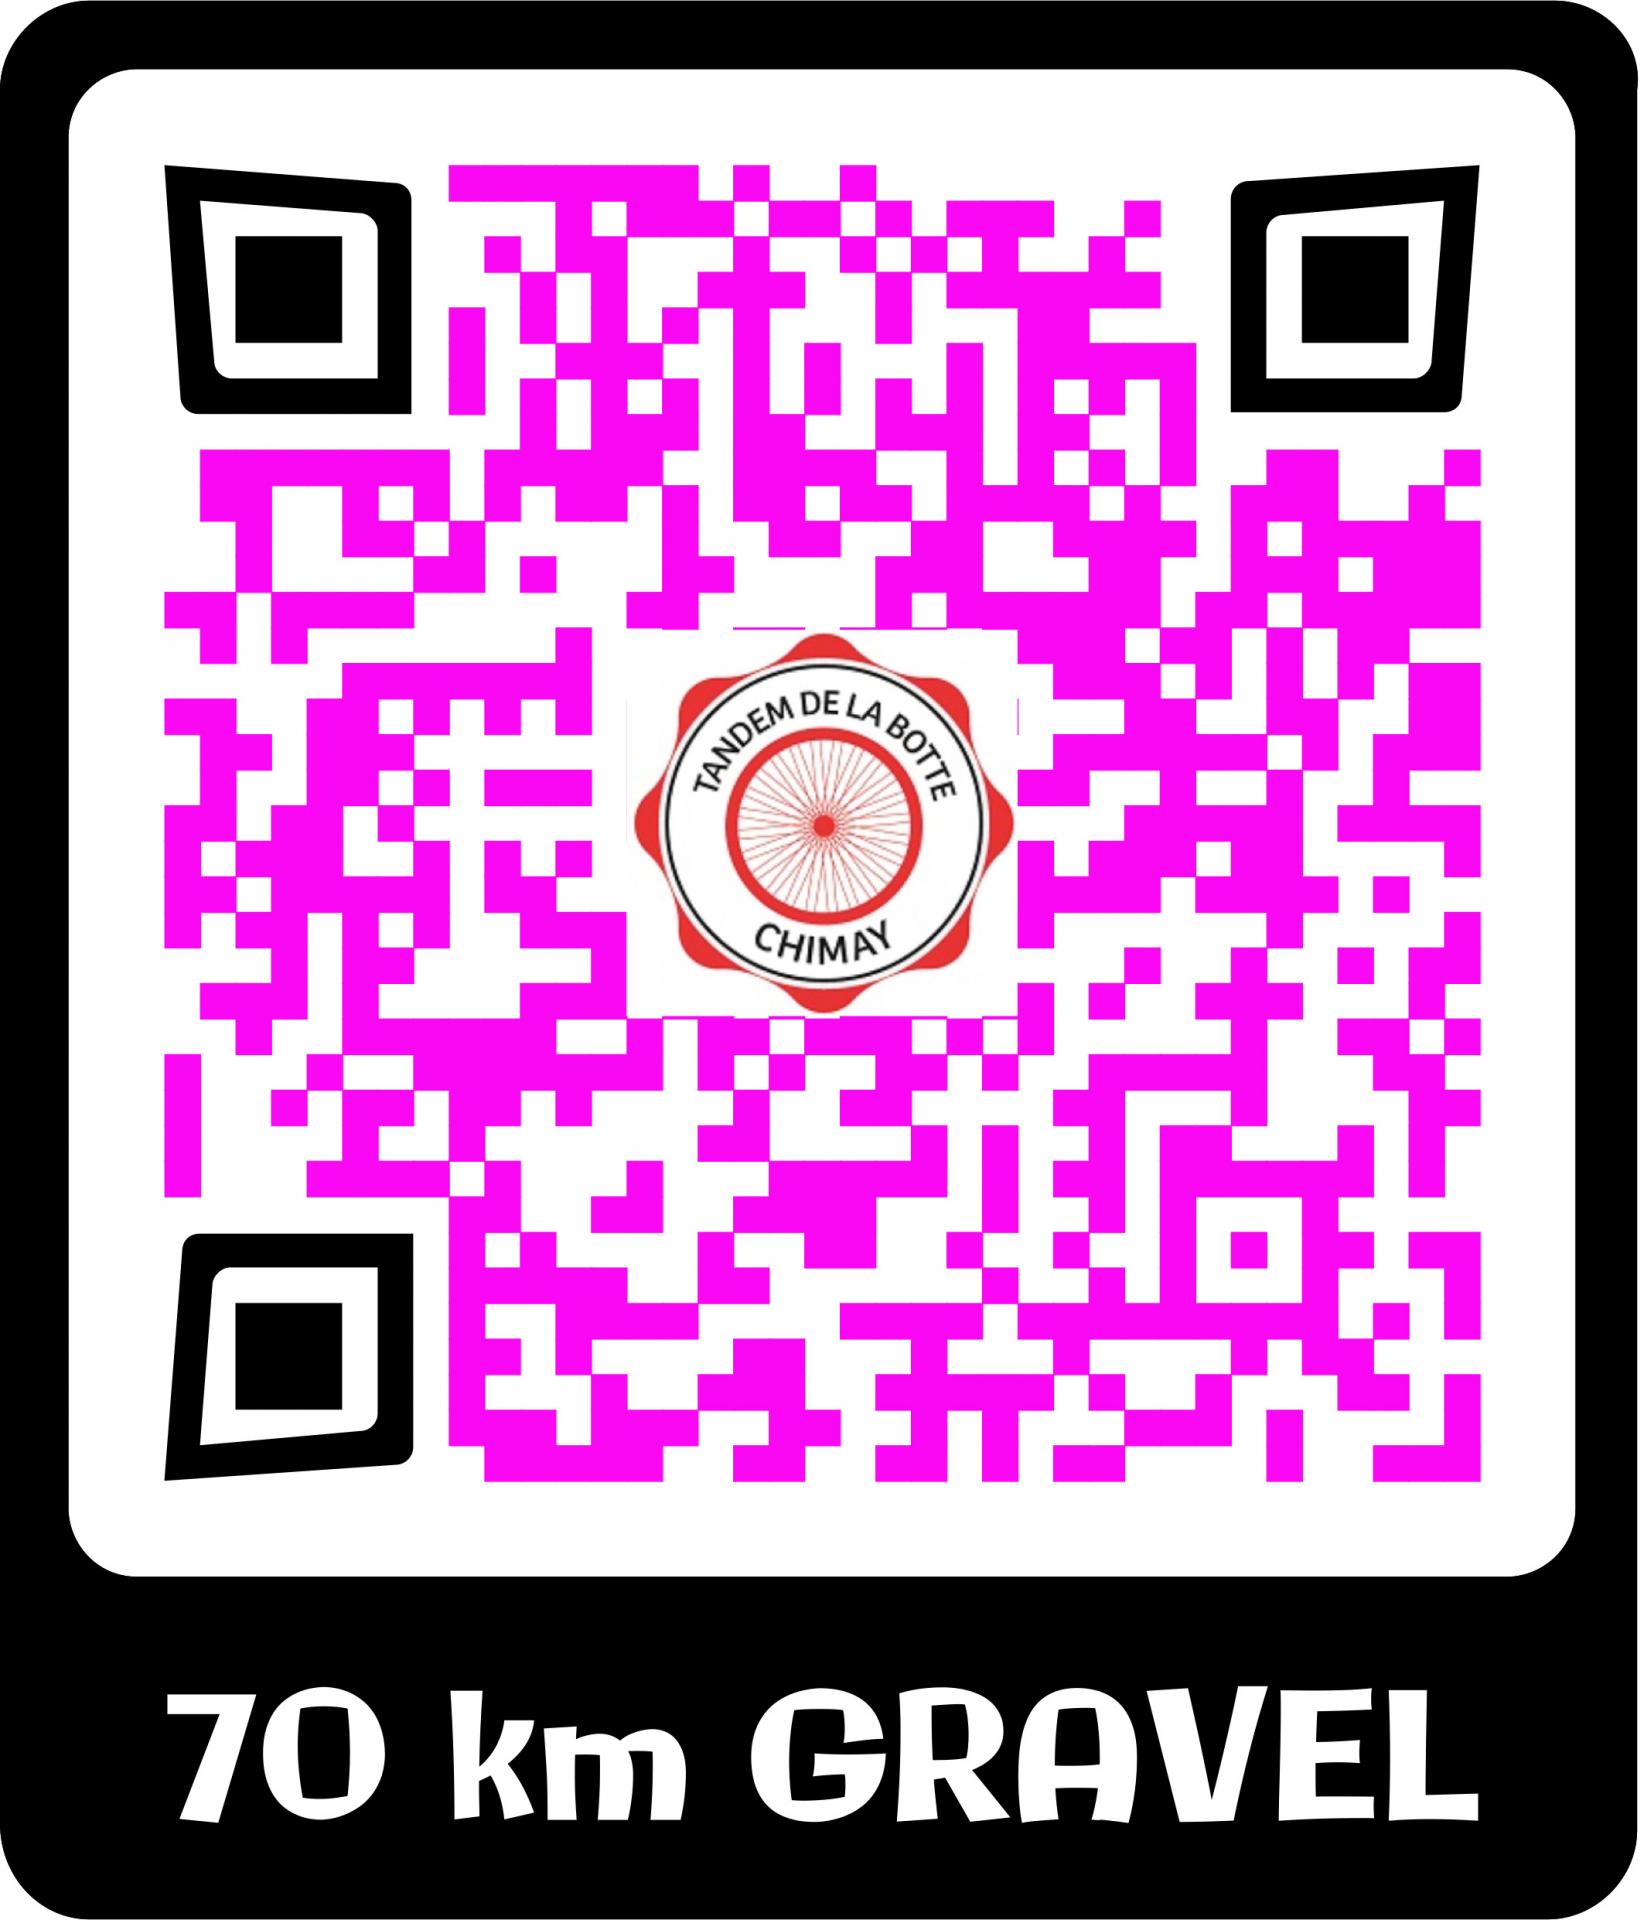 70 km gravel